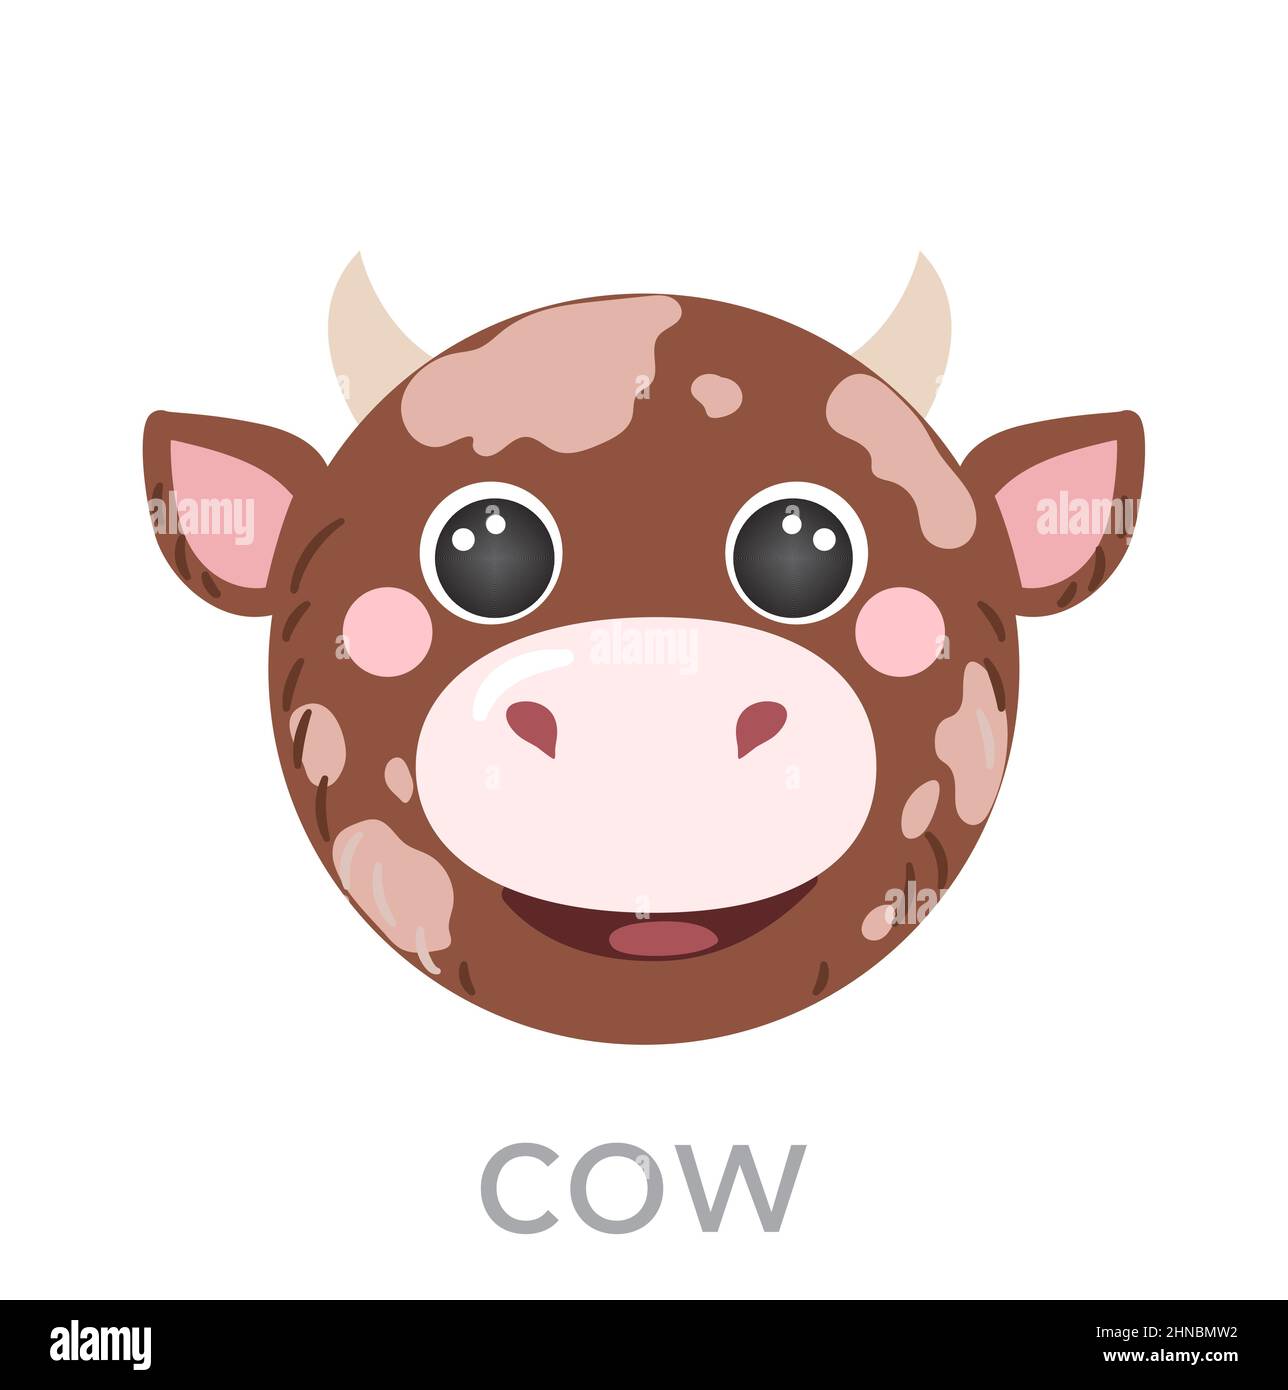 Con bò có thể không phải là thú cưng phổ biến nhất, nhưng avatar đáng yêu của họ có thể khiến mọi người cười tươi. Với tên và hình ảnh đầu ngoại trừ, avatar của con bò có thể trở thành tâm điểm chú ý của bạn. Hãy xem hình ảnh liên quan để thấy con bò đáng yêu này.